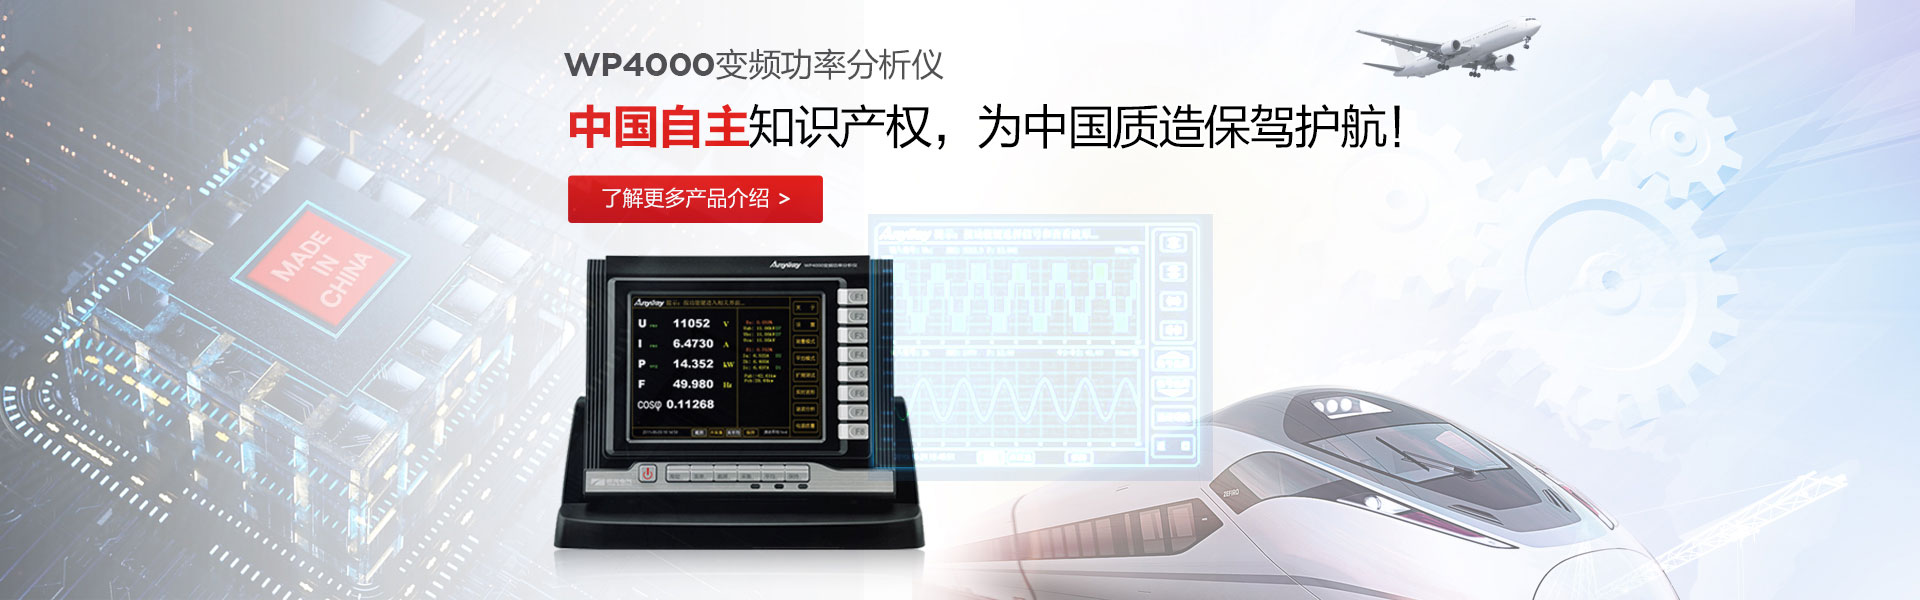 WP4000变频功率剖析仪